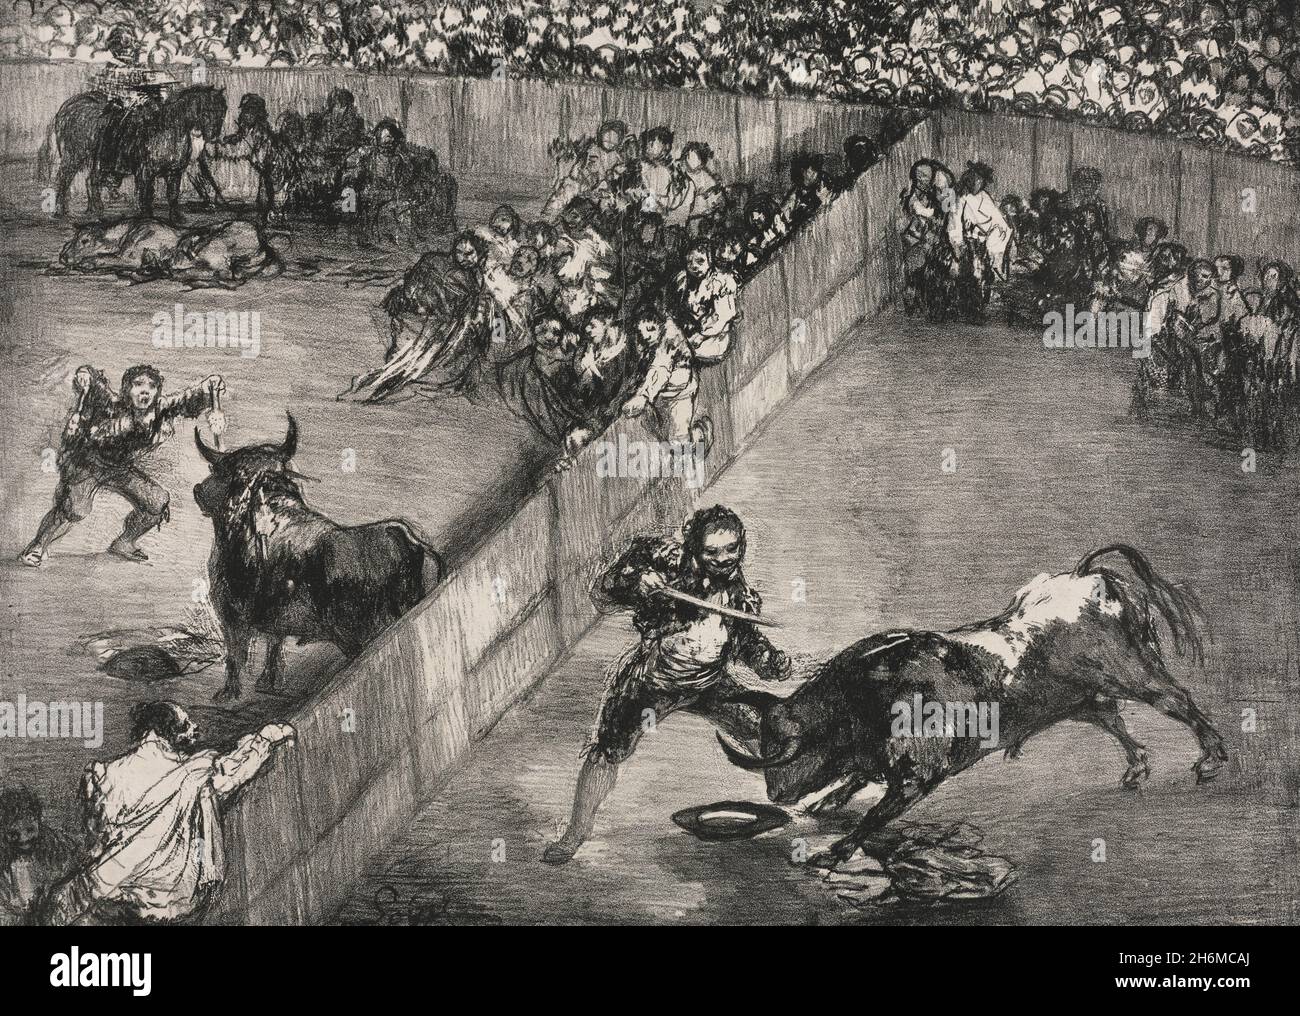 Les taureaux de Bordeaux : corrida dans un anneau divisé - Francisco de Goya, 1825 Banque D'Images